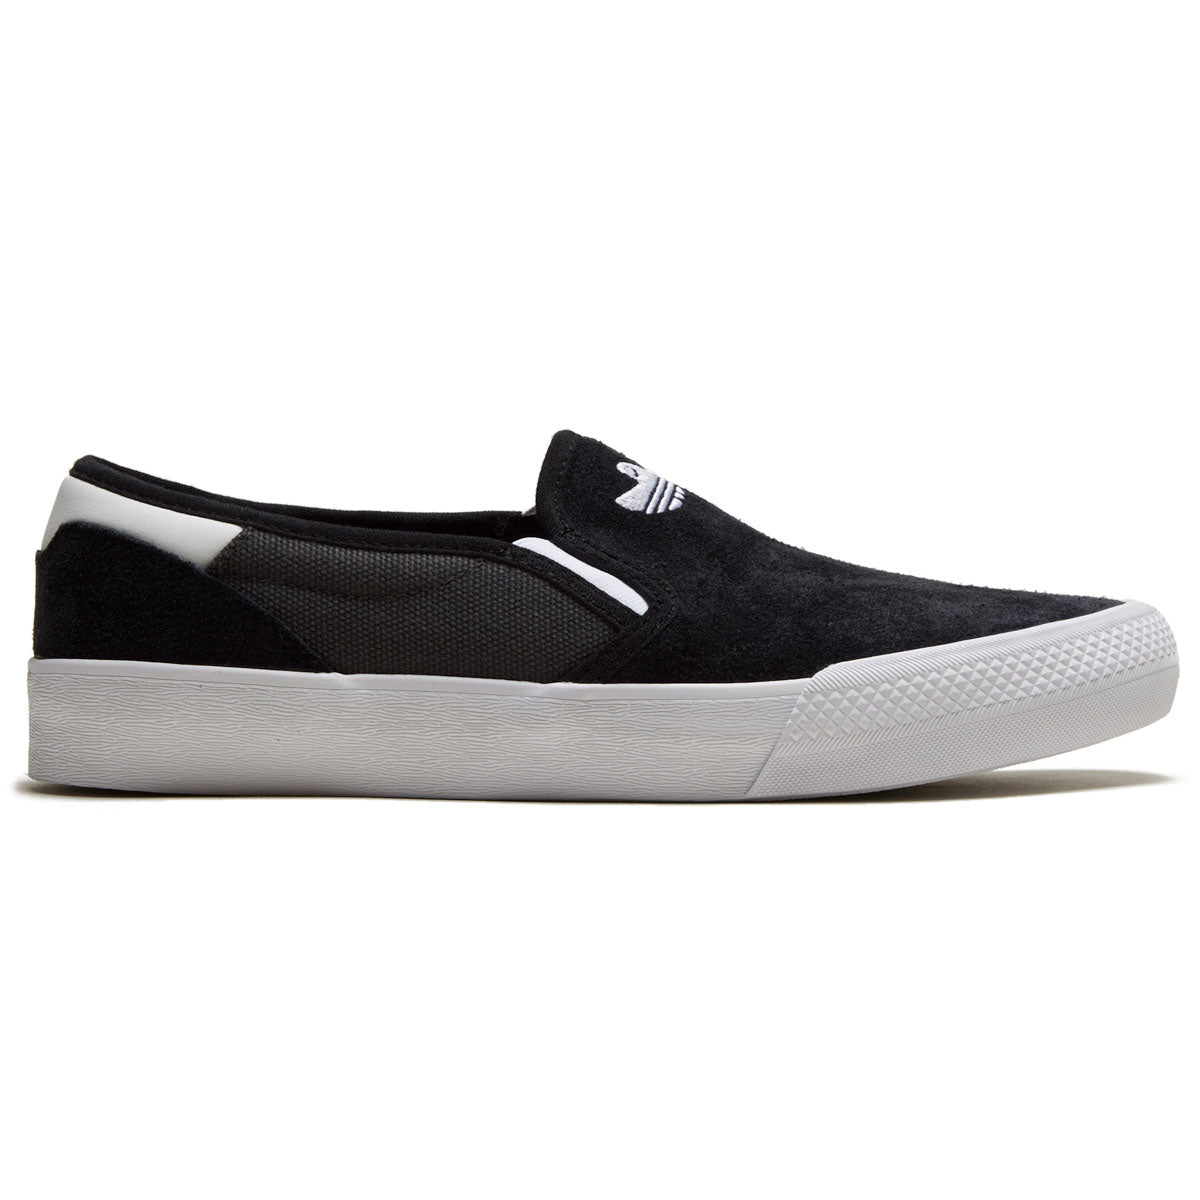 Adidas Shmoofoil Slip On Shoes - Core Black/Grey/White image 1